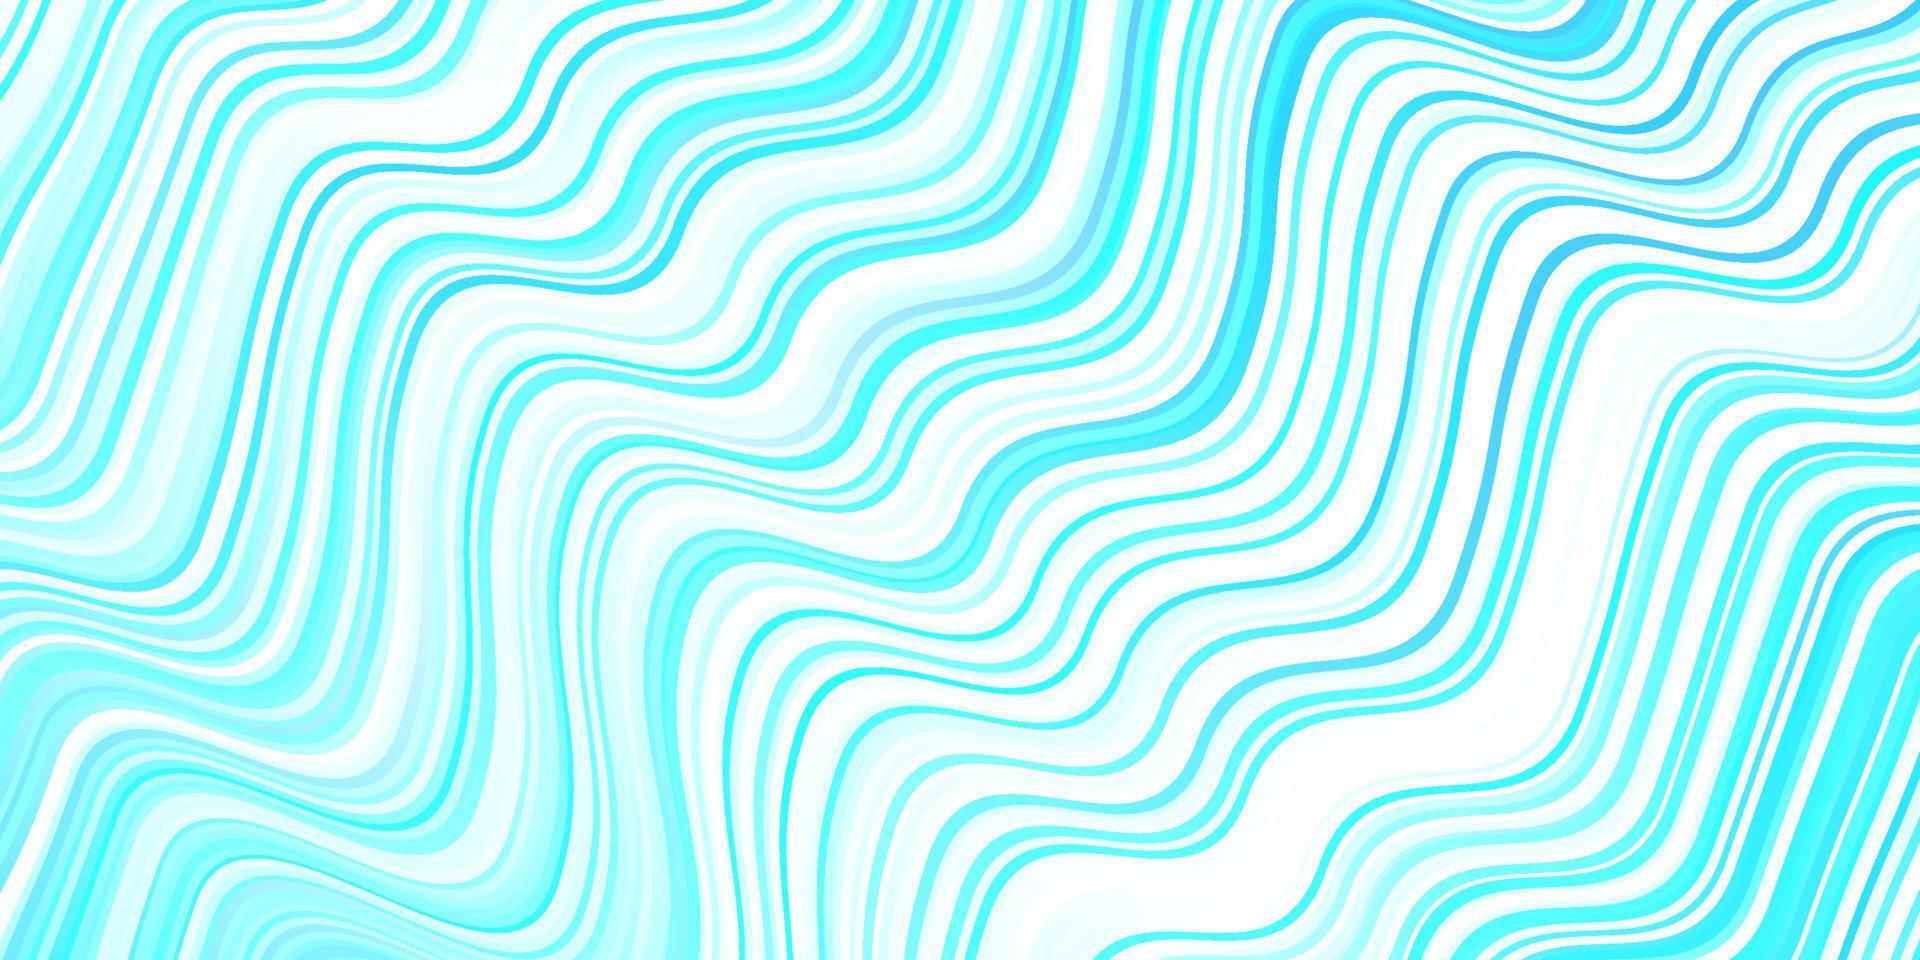 texture vettoriale blu chiaro con linee curve.